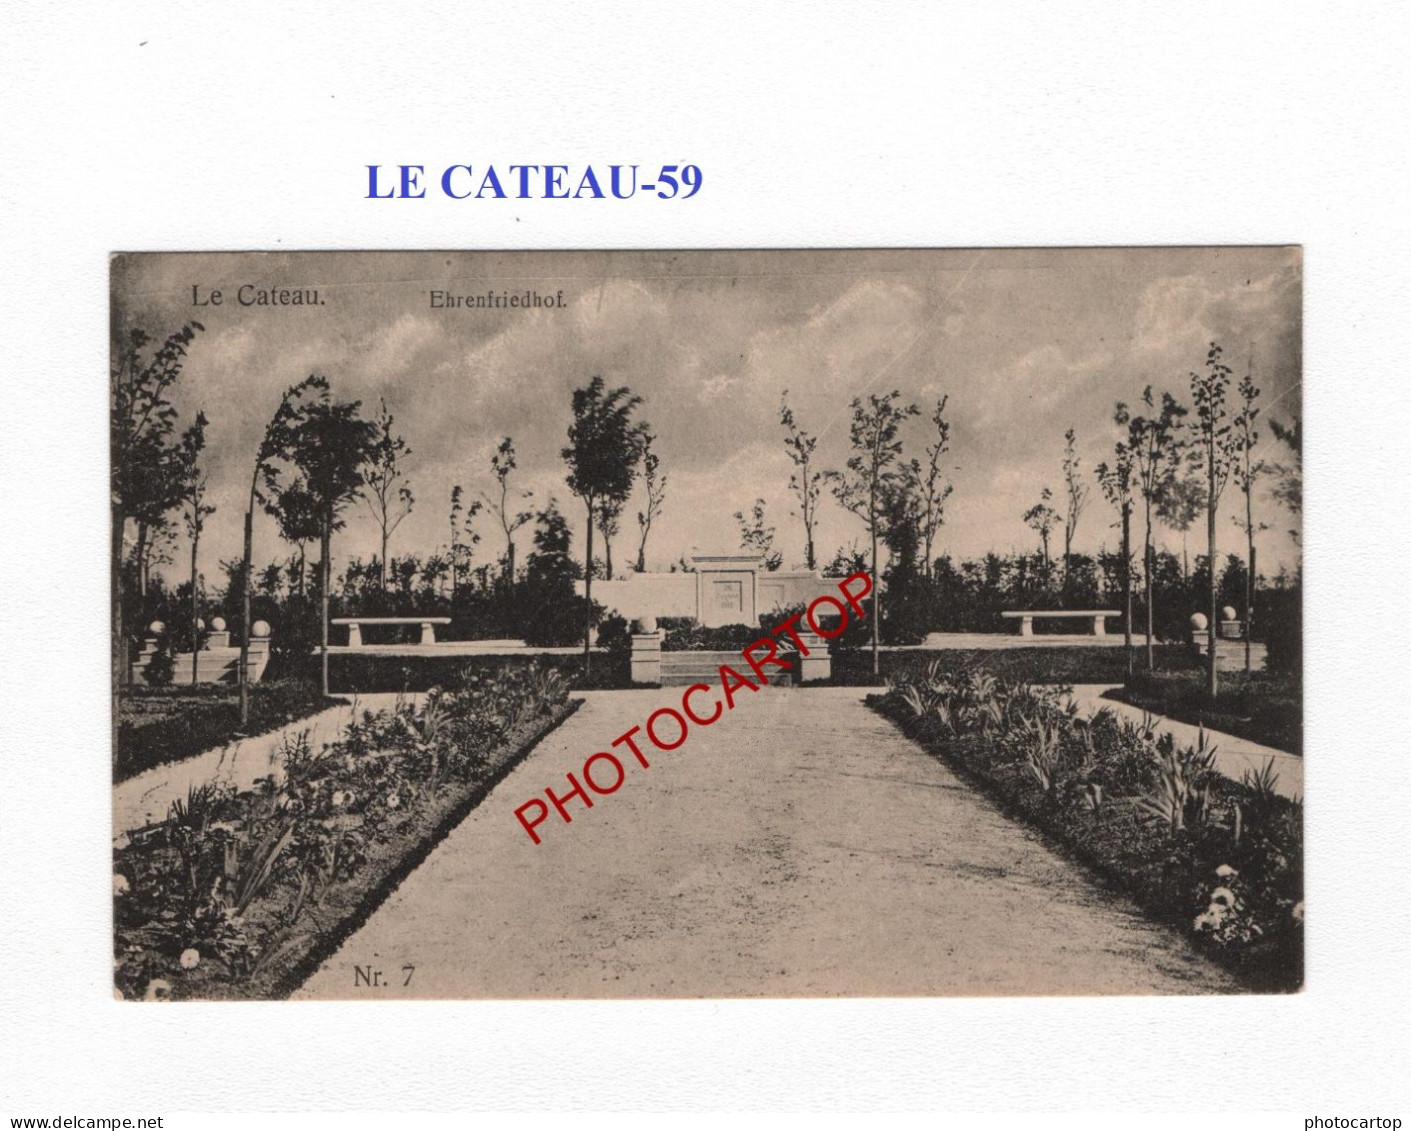 LE CATEAU-59-Tombes-Monument-Cimetiere-CARTE Imprimee Allemande-GUERRE 14-18-1 WK-MILITARIA- - Cimetières Militaires